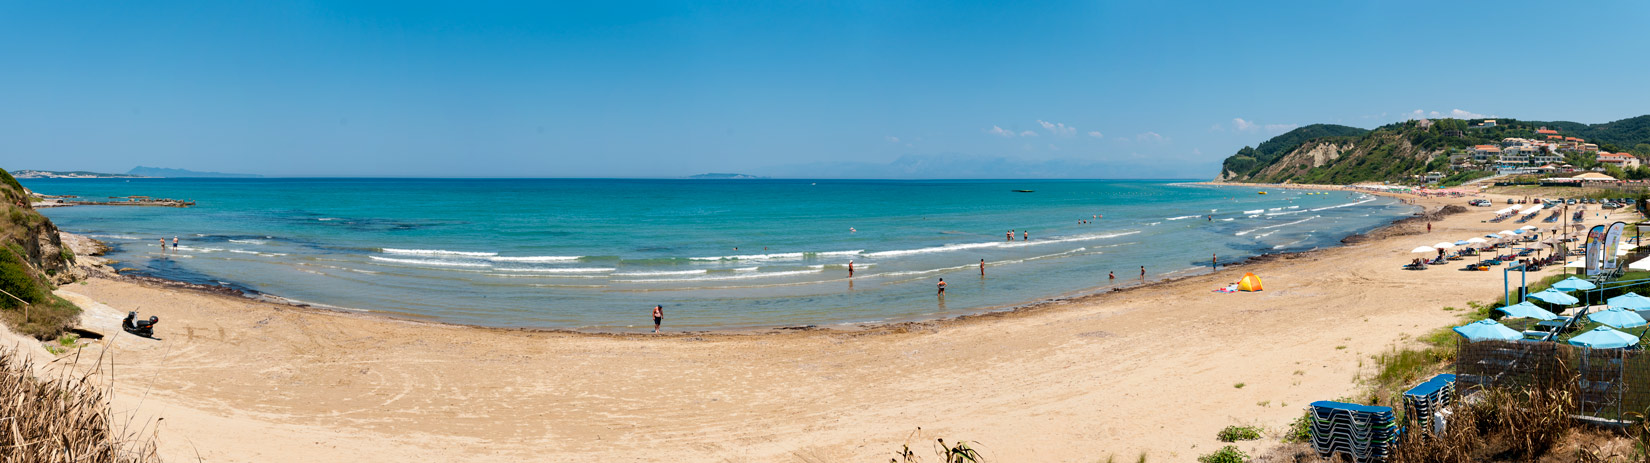 Pláž Agios Stefanos